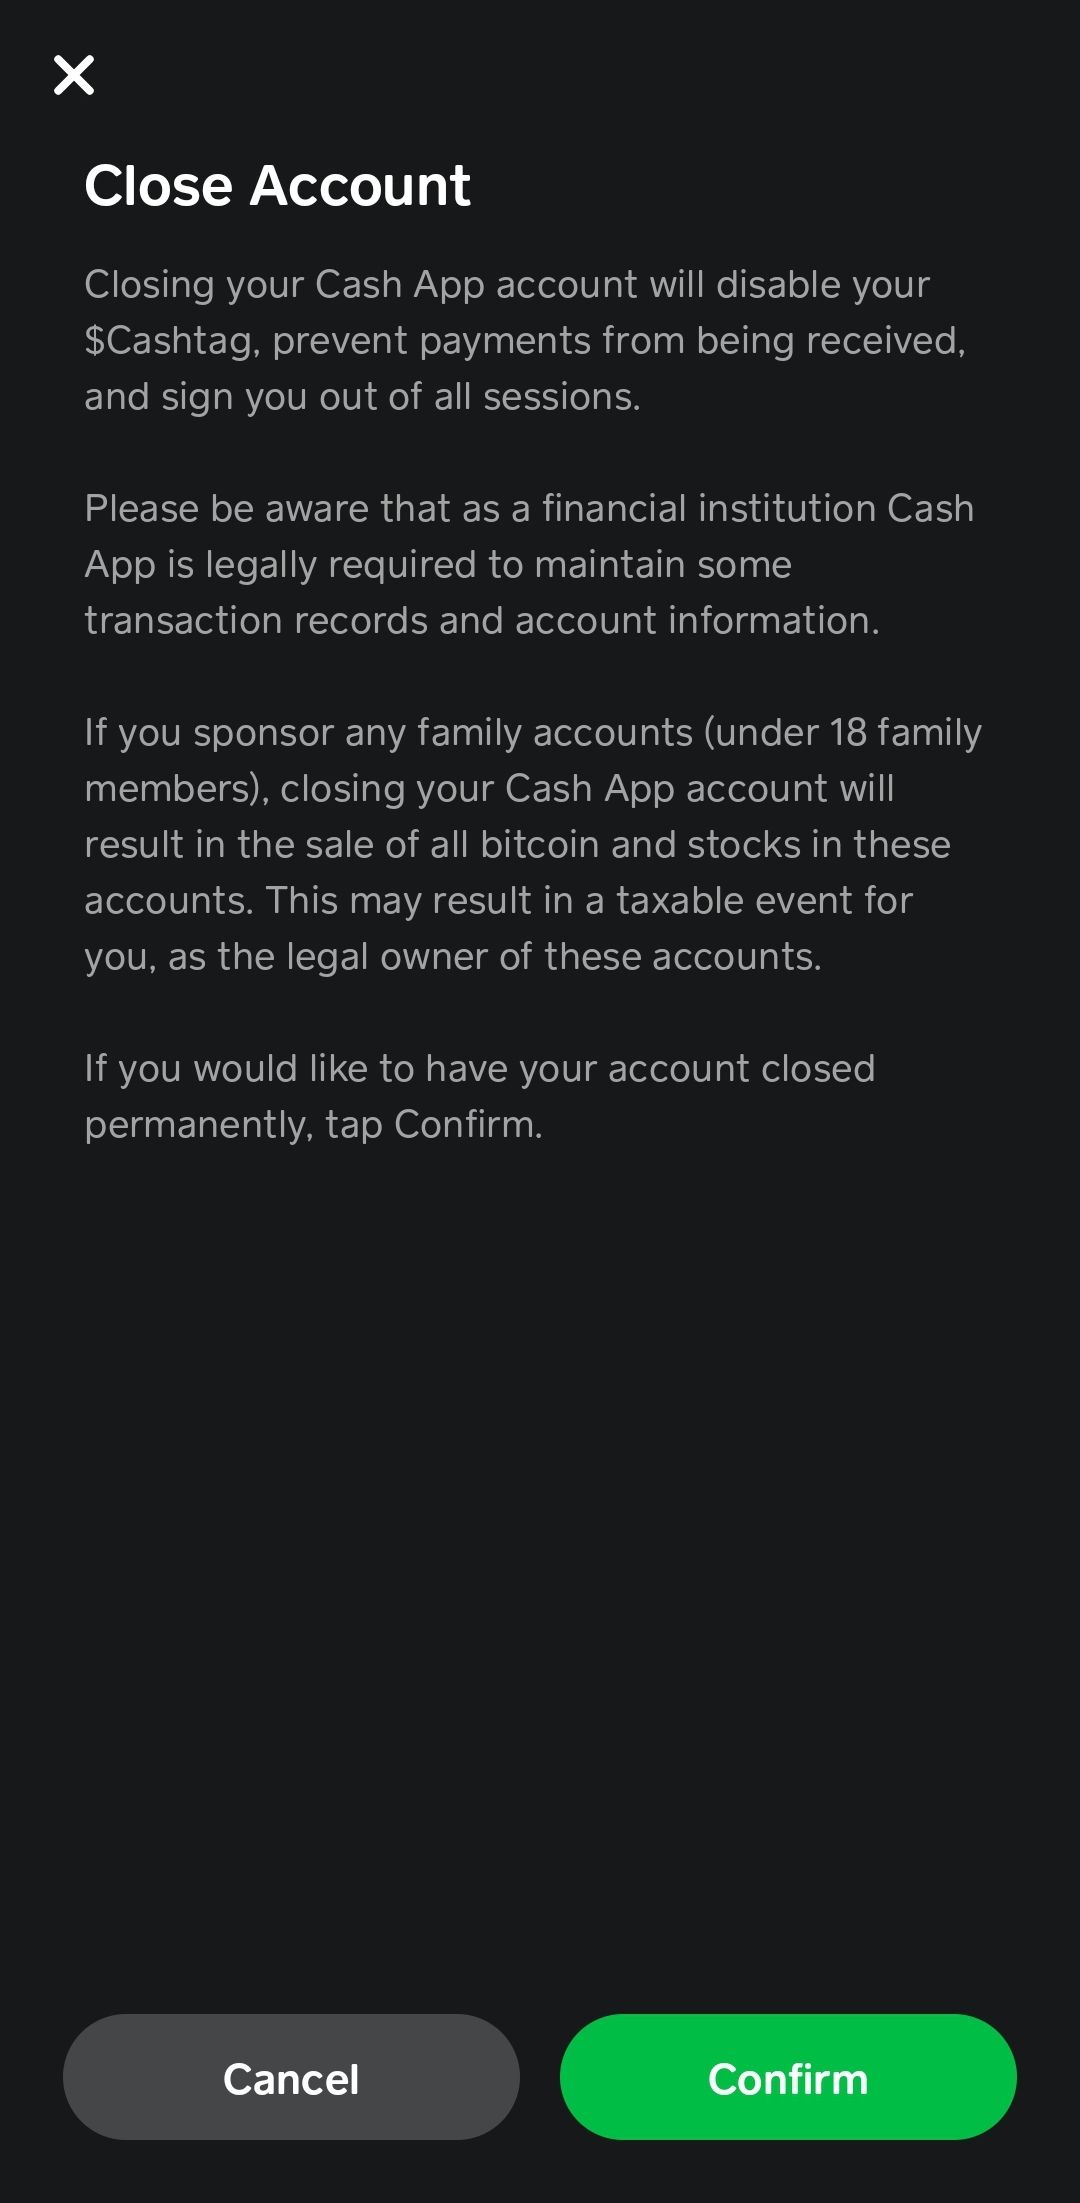 Captura de tela da confirmação de encerramento da conta no aplicativo Android